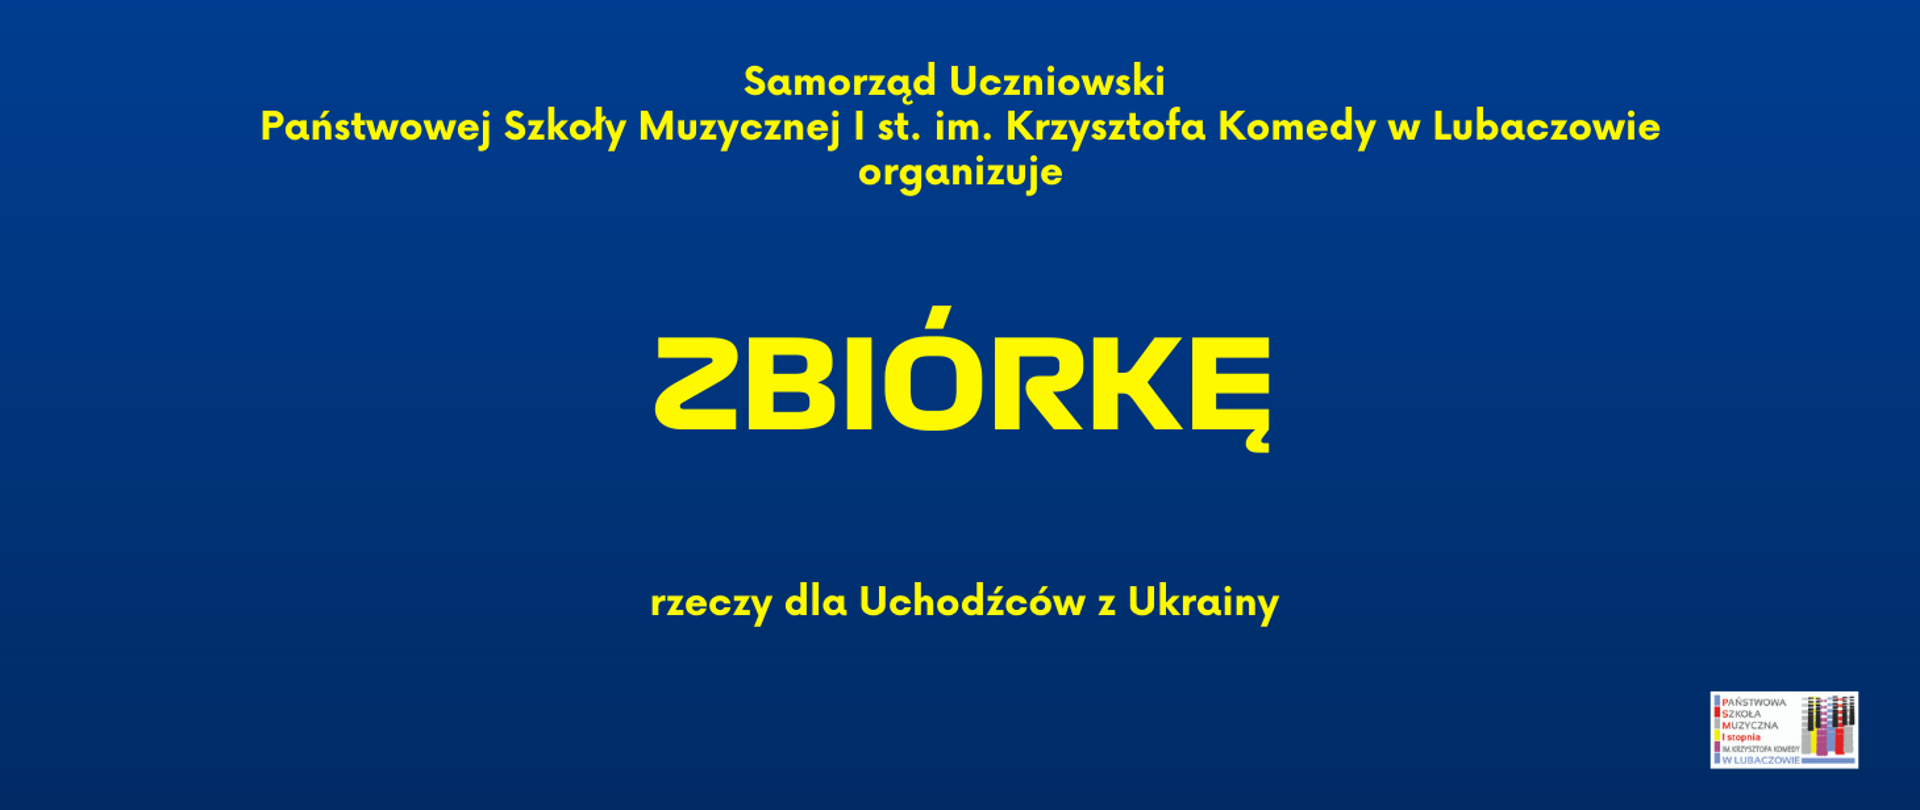 Niebieska grafika z tekstem "Zbiórka rzeczy dla Uchodźców z Ukrainy"